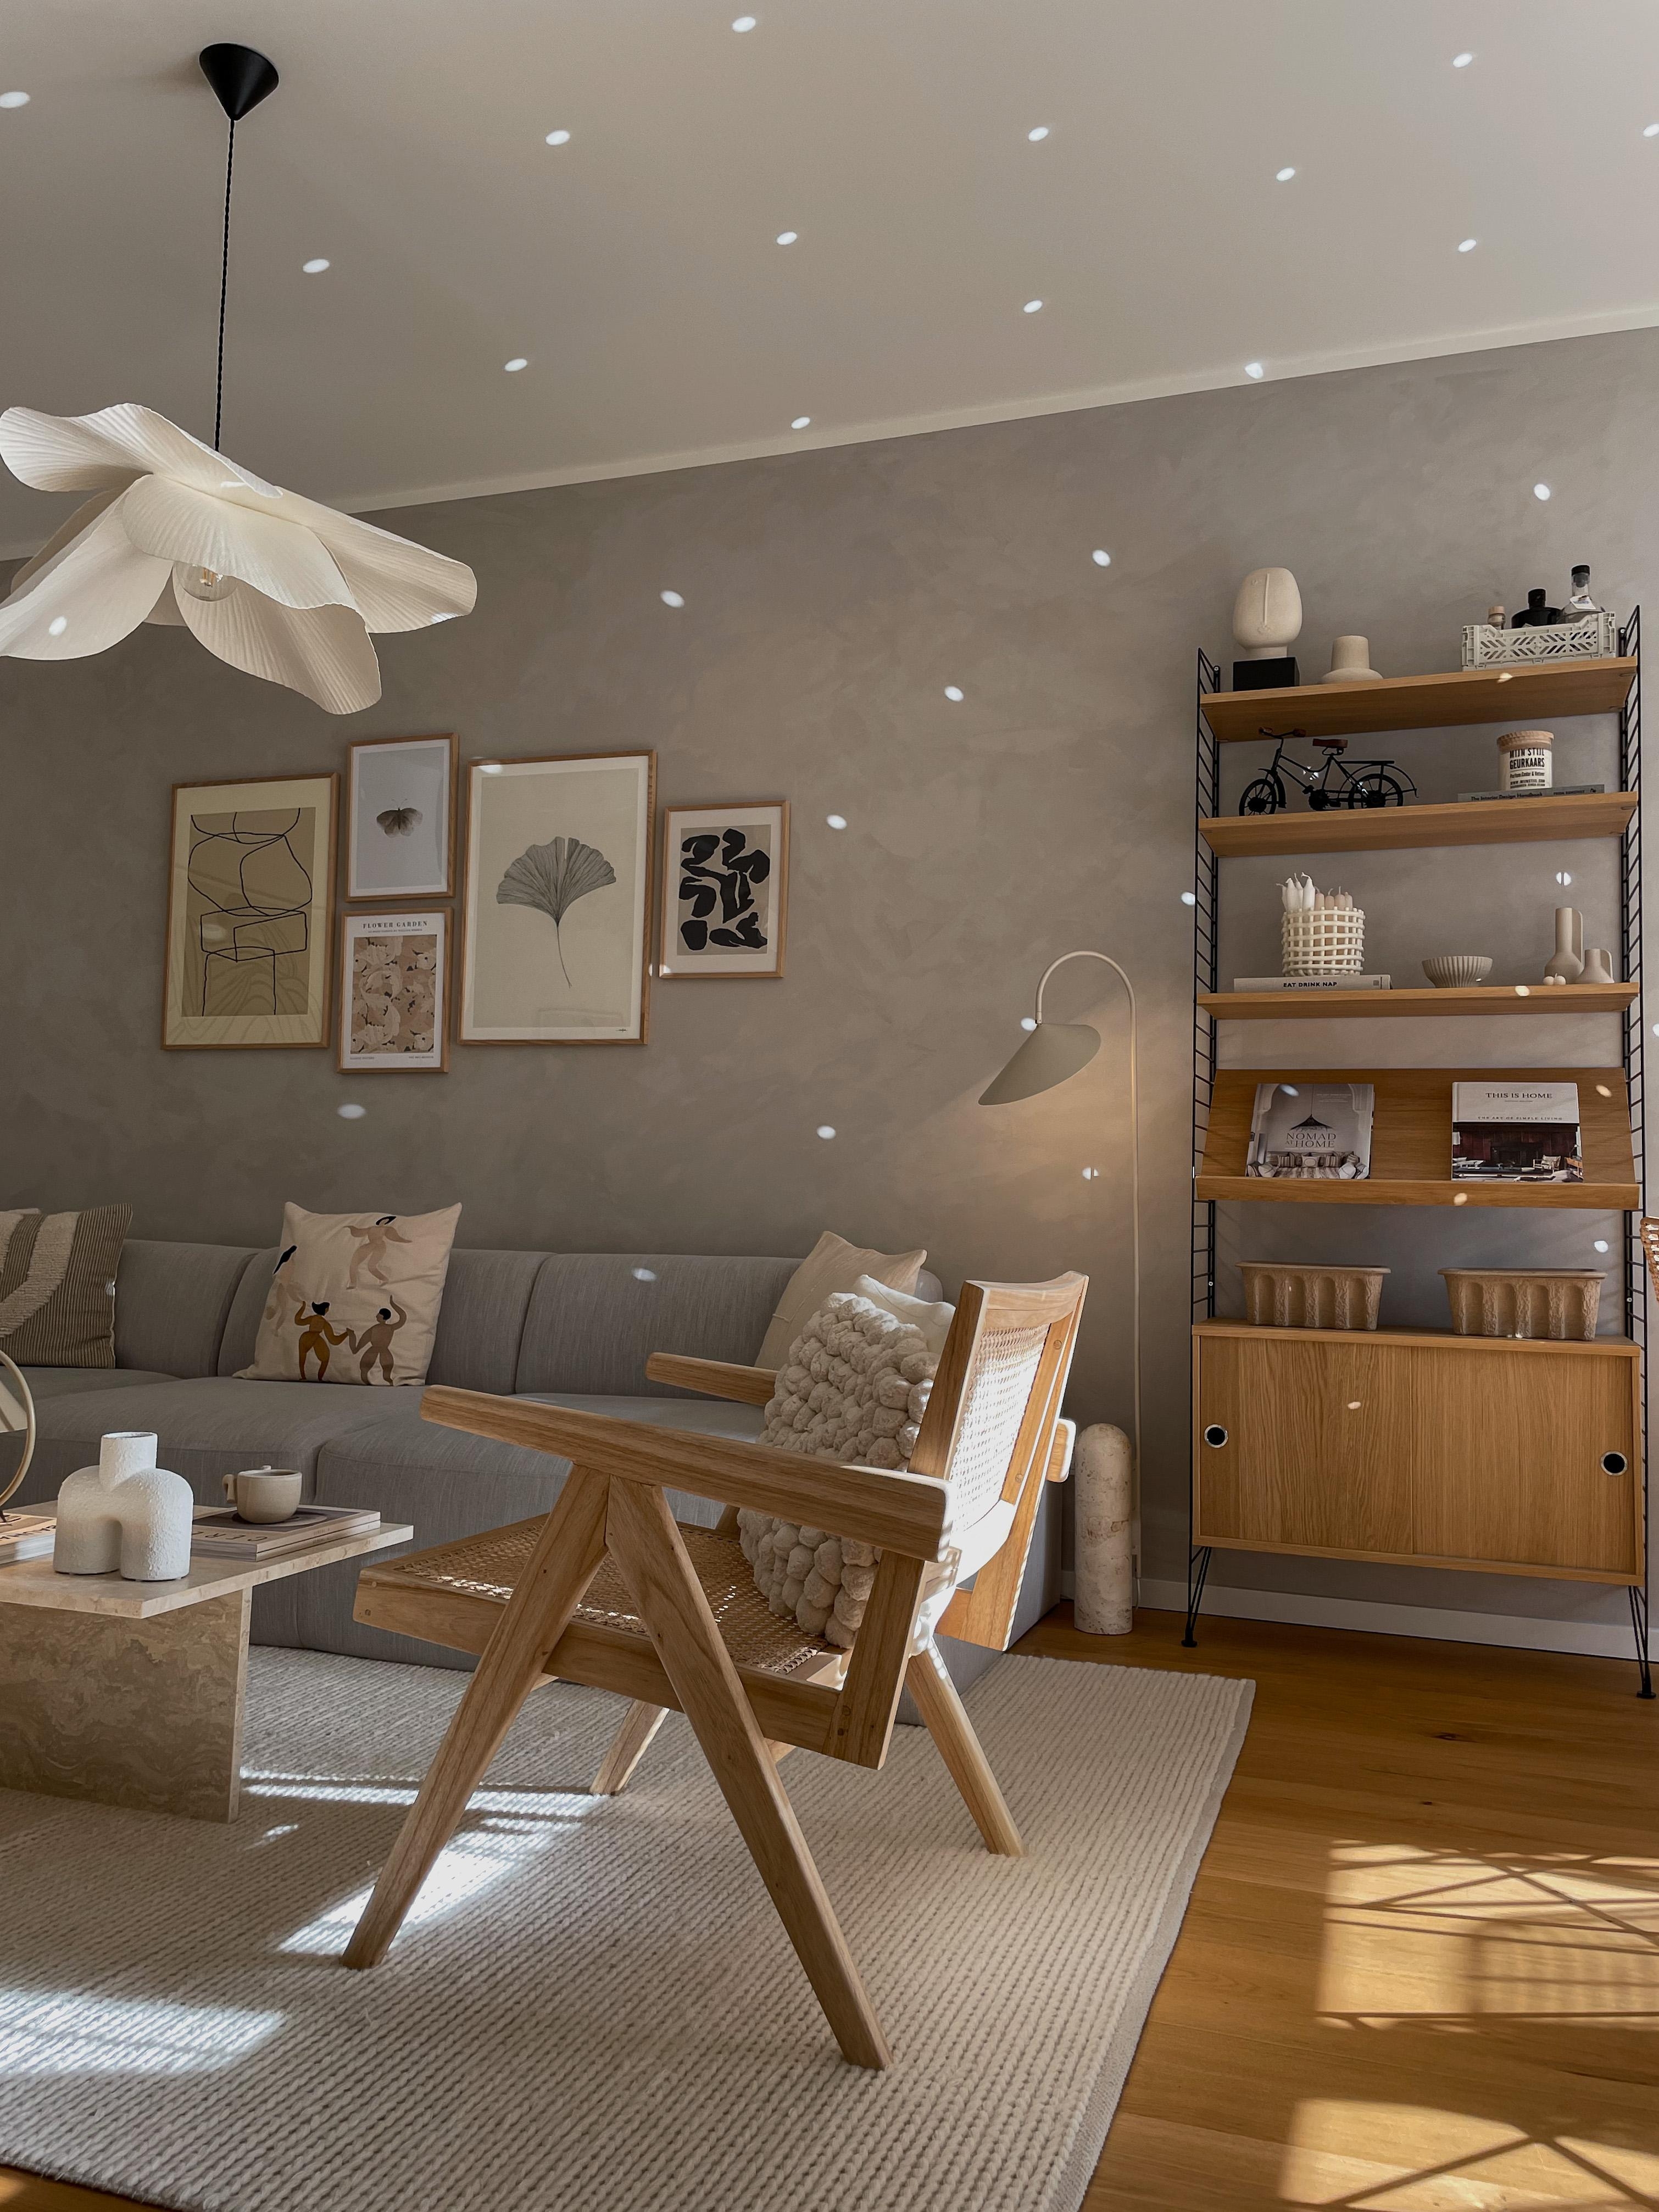 #wohnzimmer #wohnzimmerinspo #couchstyle #couch #stringregal #interior